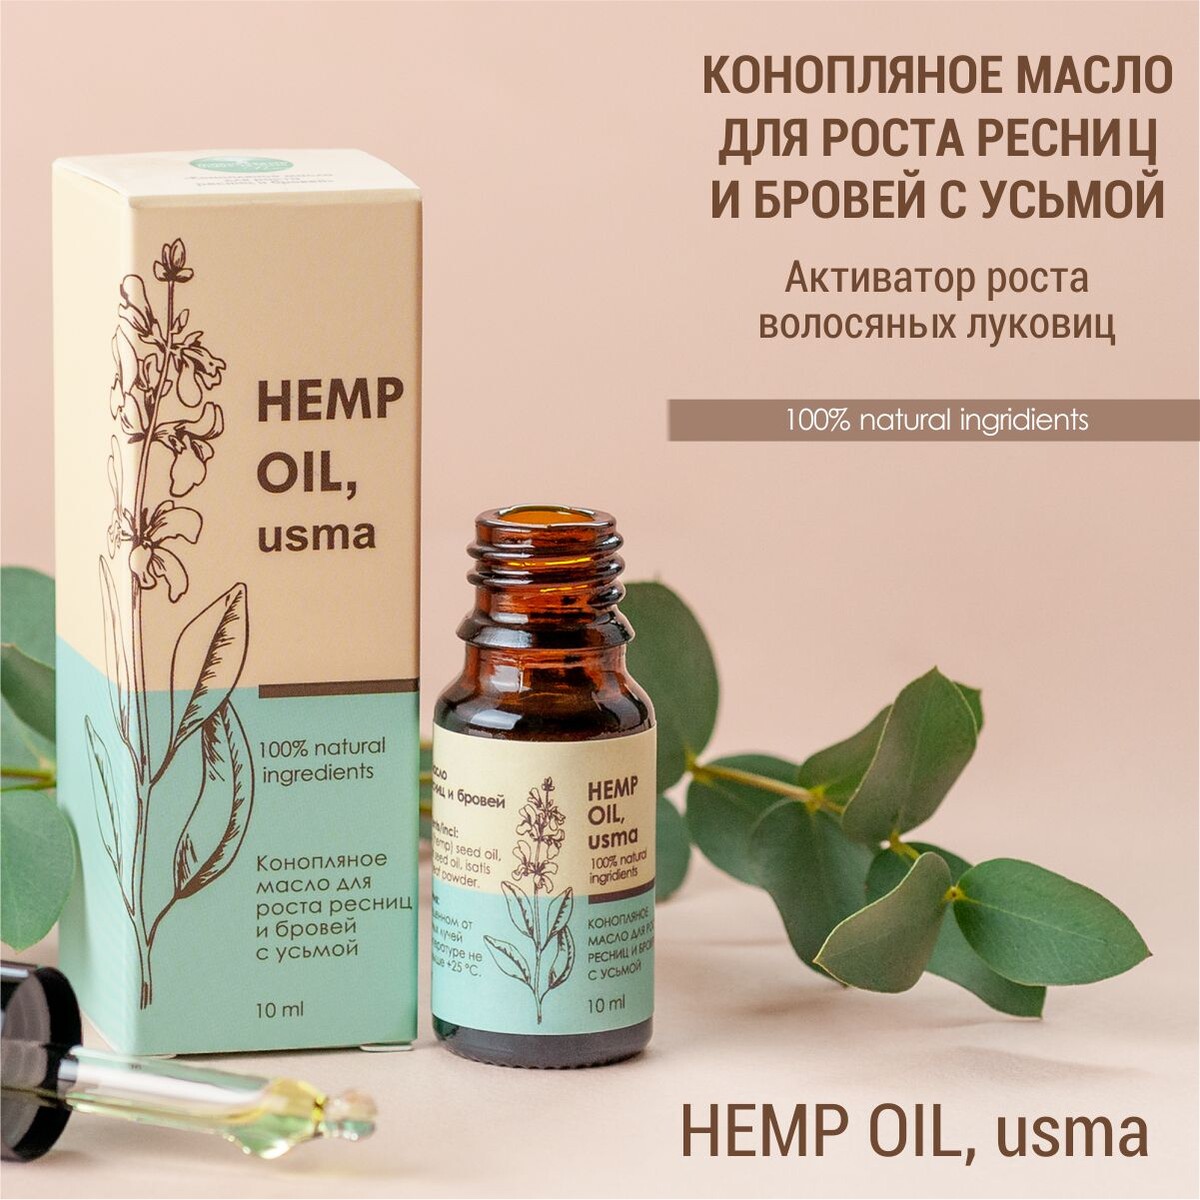 Конопляное масло для роста ресниц и бровей с усьмой (hemp oil, usma)